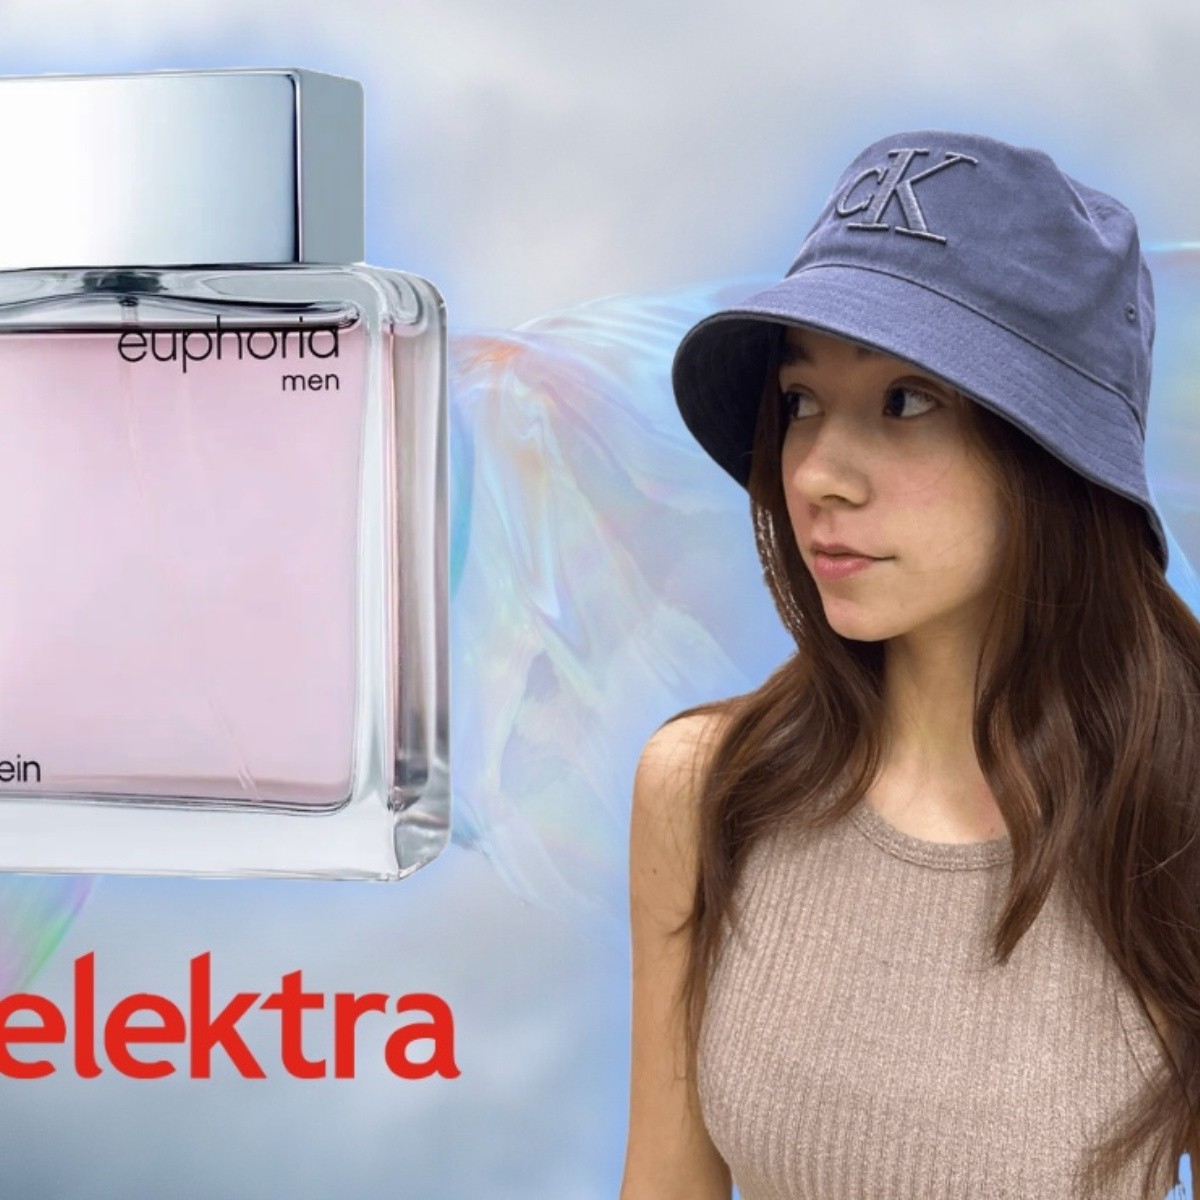 elektra remata productos de la marca calvin klein: perfumes, interiores, tenis con descuento